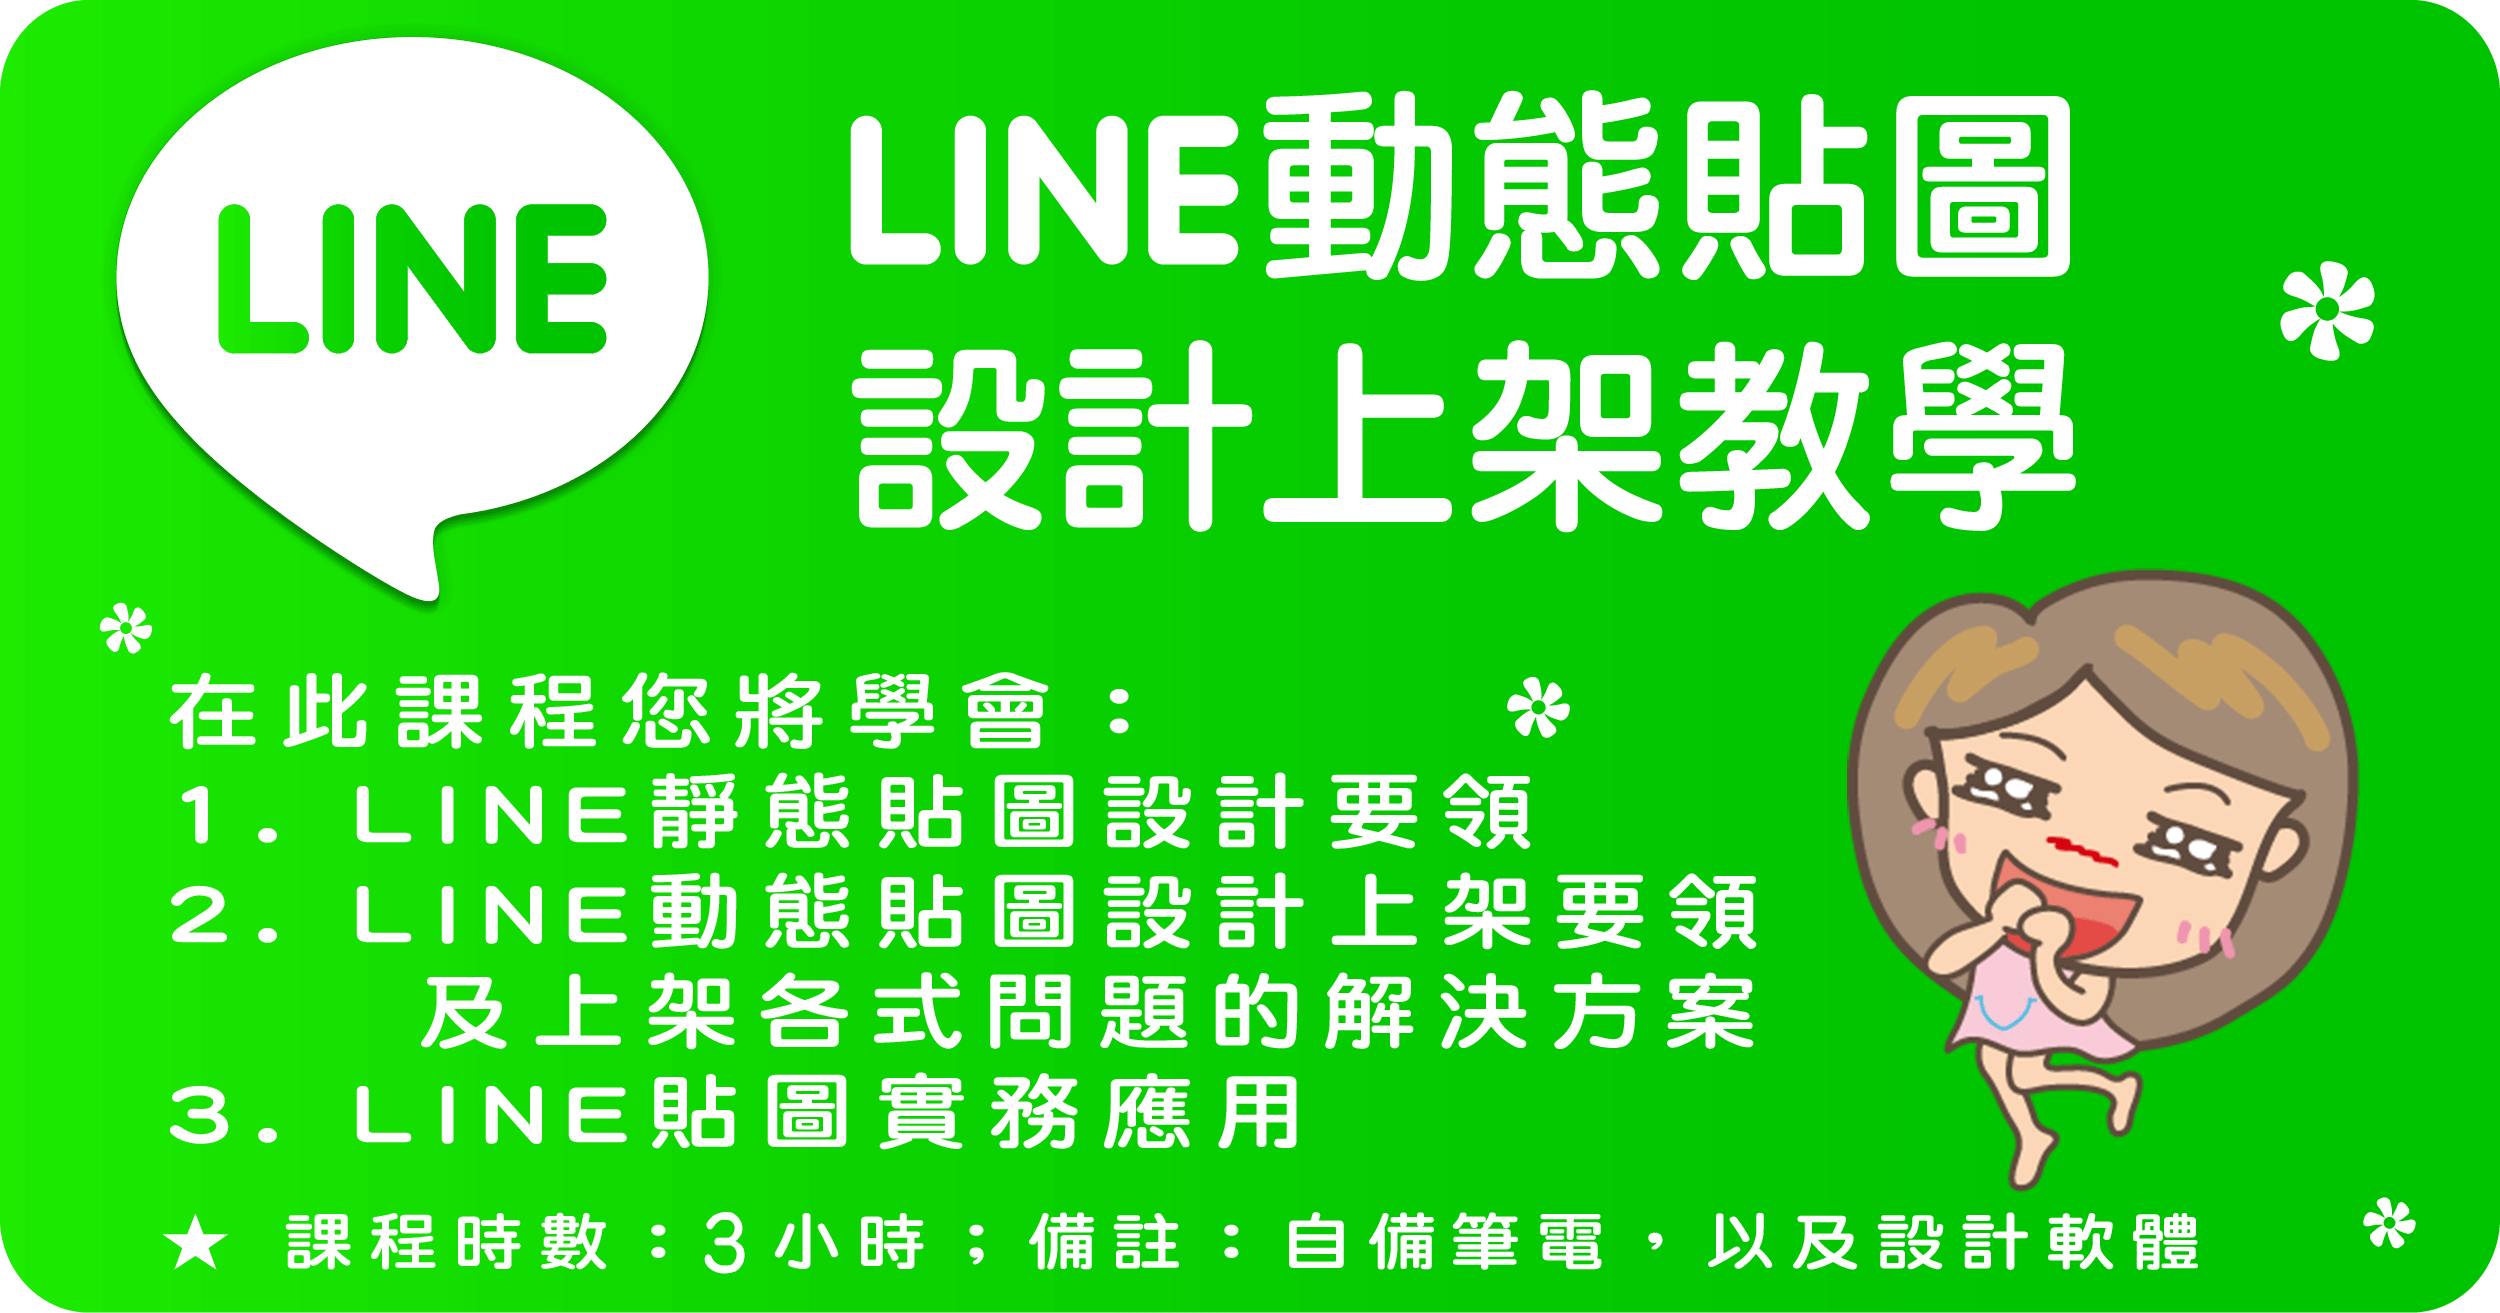 line-sticker-training-banner2